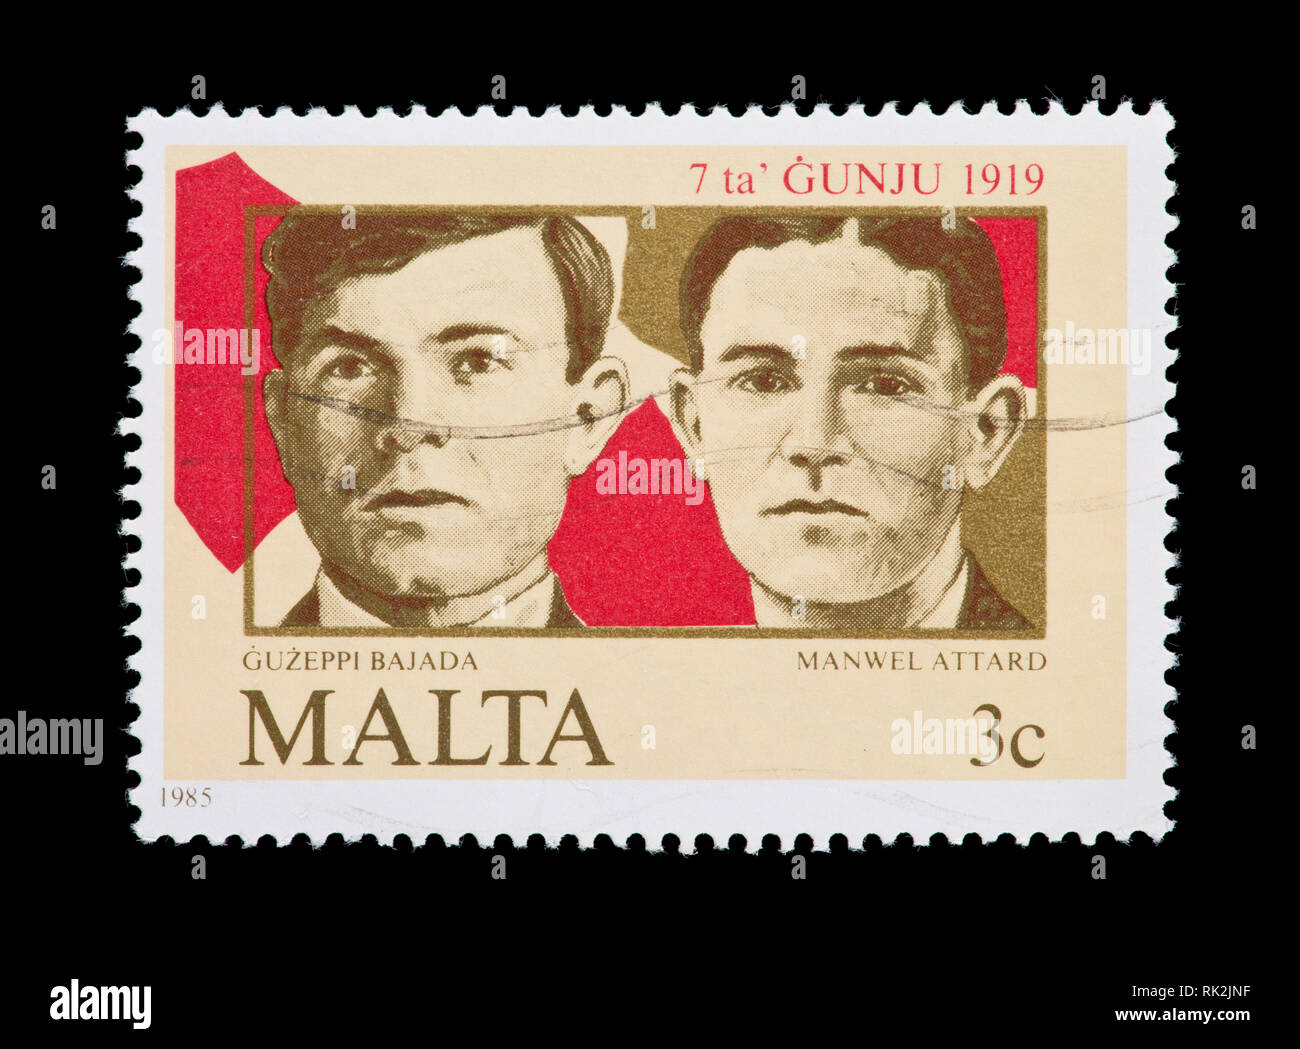 Briefmarke aus Malta, Guzeppi Bajada und Manwel Attard, 66th Jahrestag des 7. Juni Aufstand Stockfoto